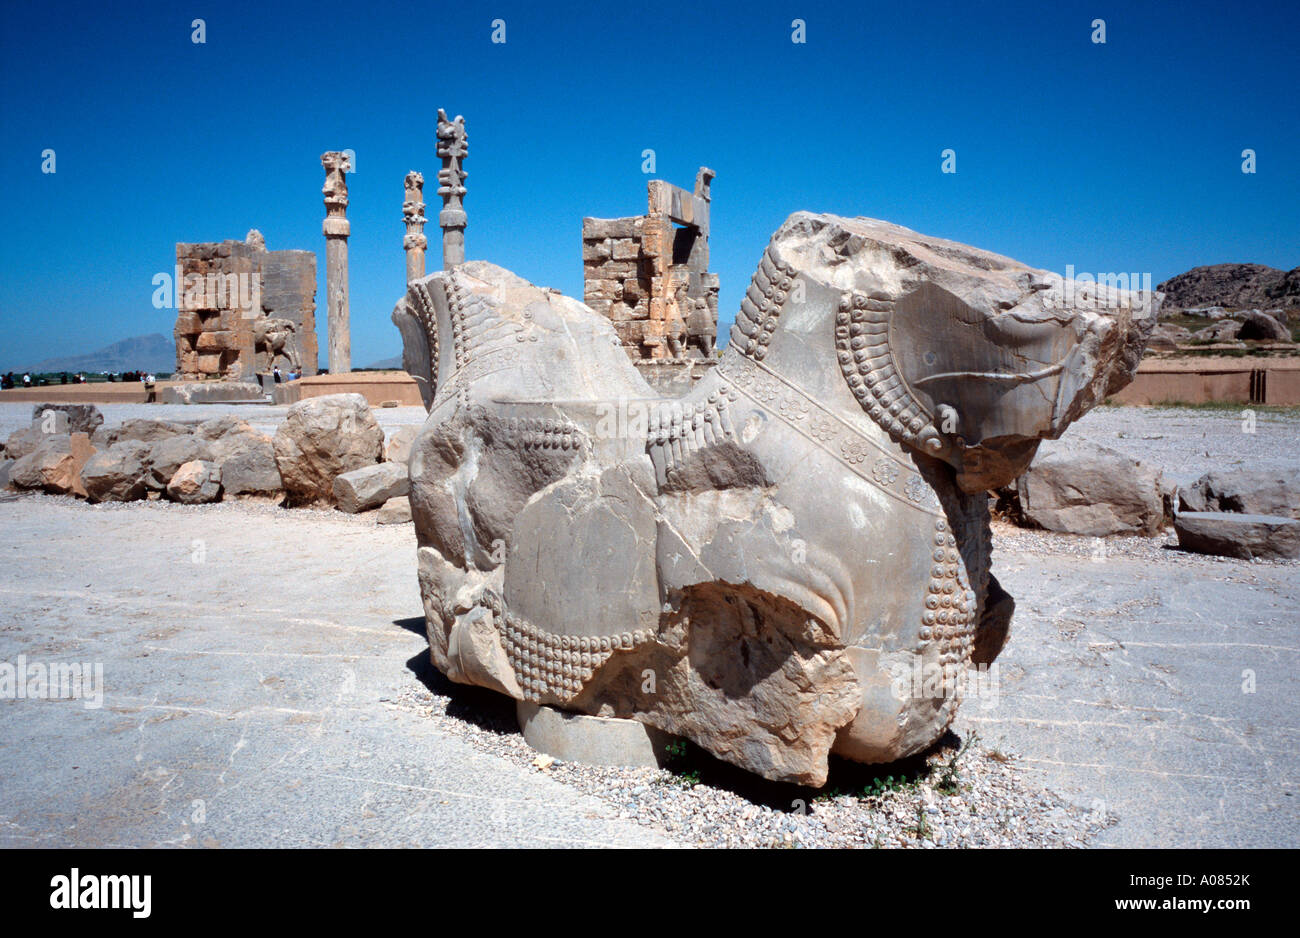 Ancient Persepolis near the Iranian city of Shiraz Stock Photo